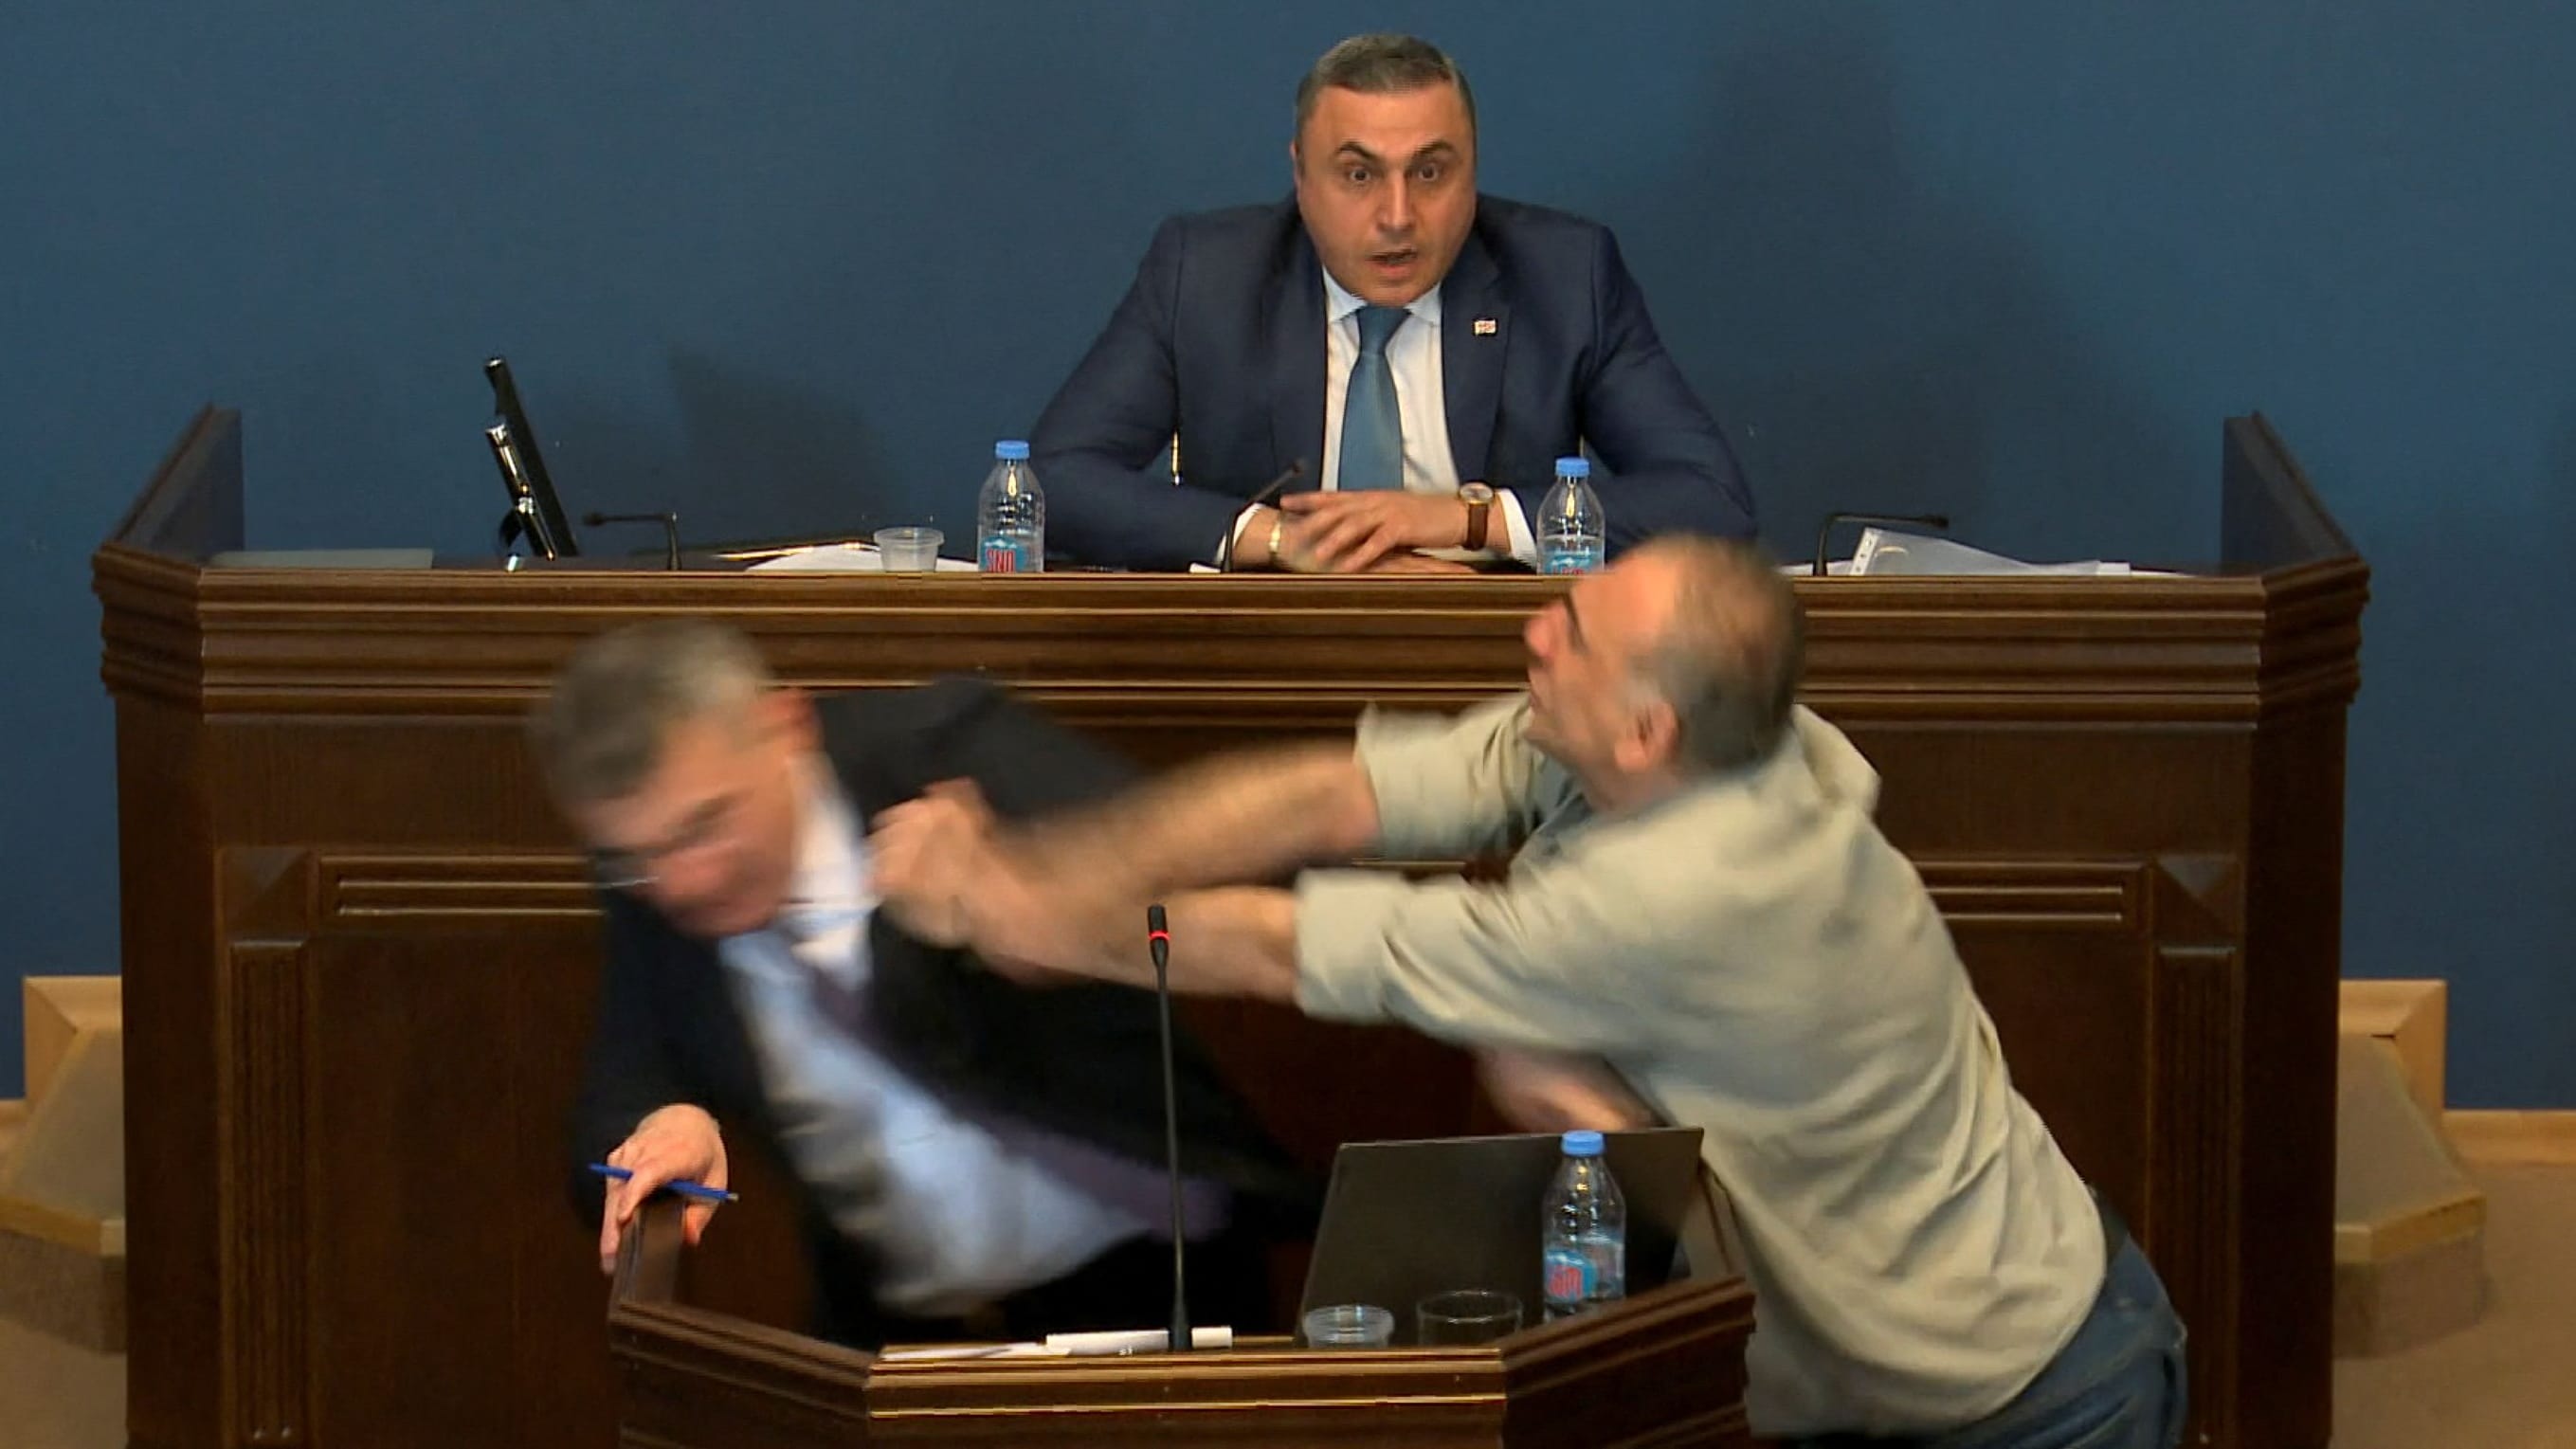 Georgien: Faustschlag im Parlament bei Debatte über 